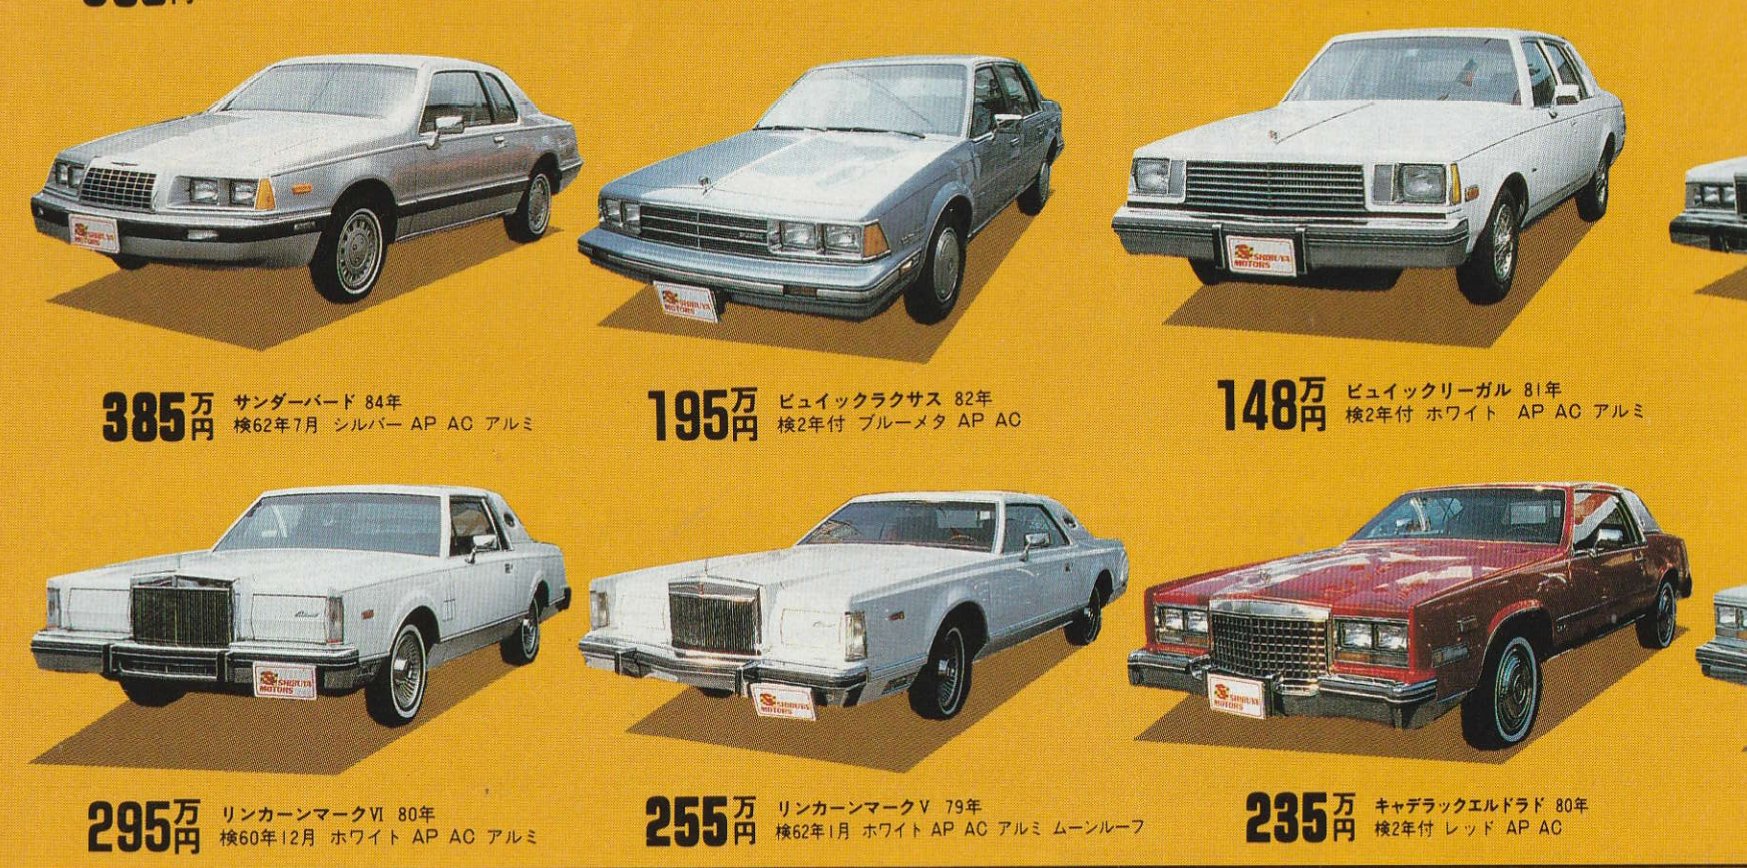 兵庫の車好き Zen6swxs 当時はオムニのファストバックモデルオムニ024も輸入されていたようです 本当にこの当時の雑誌を見ているとマイナーな車種が普通に売られているので勉強になります Twitter